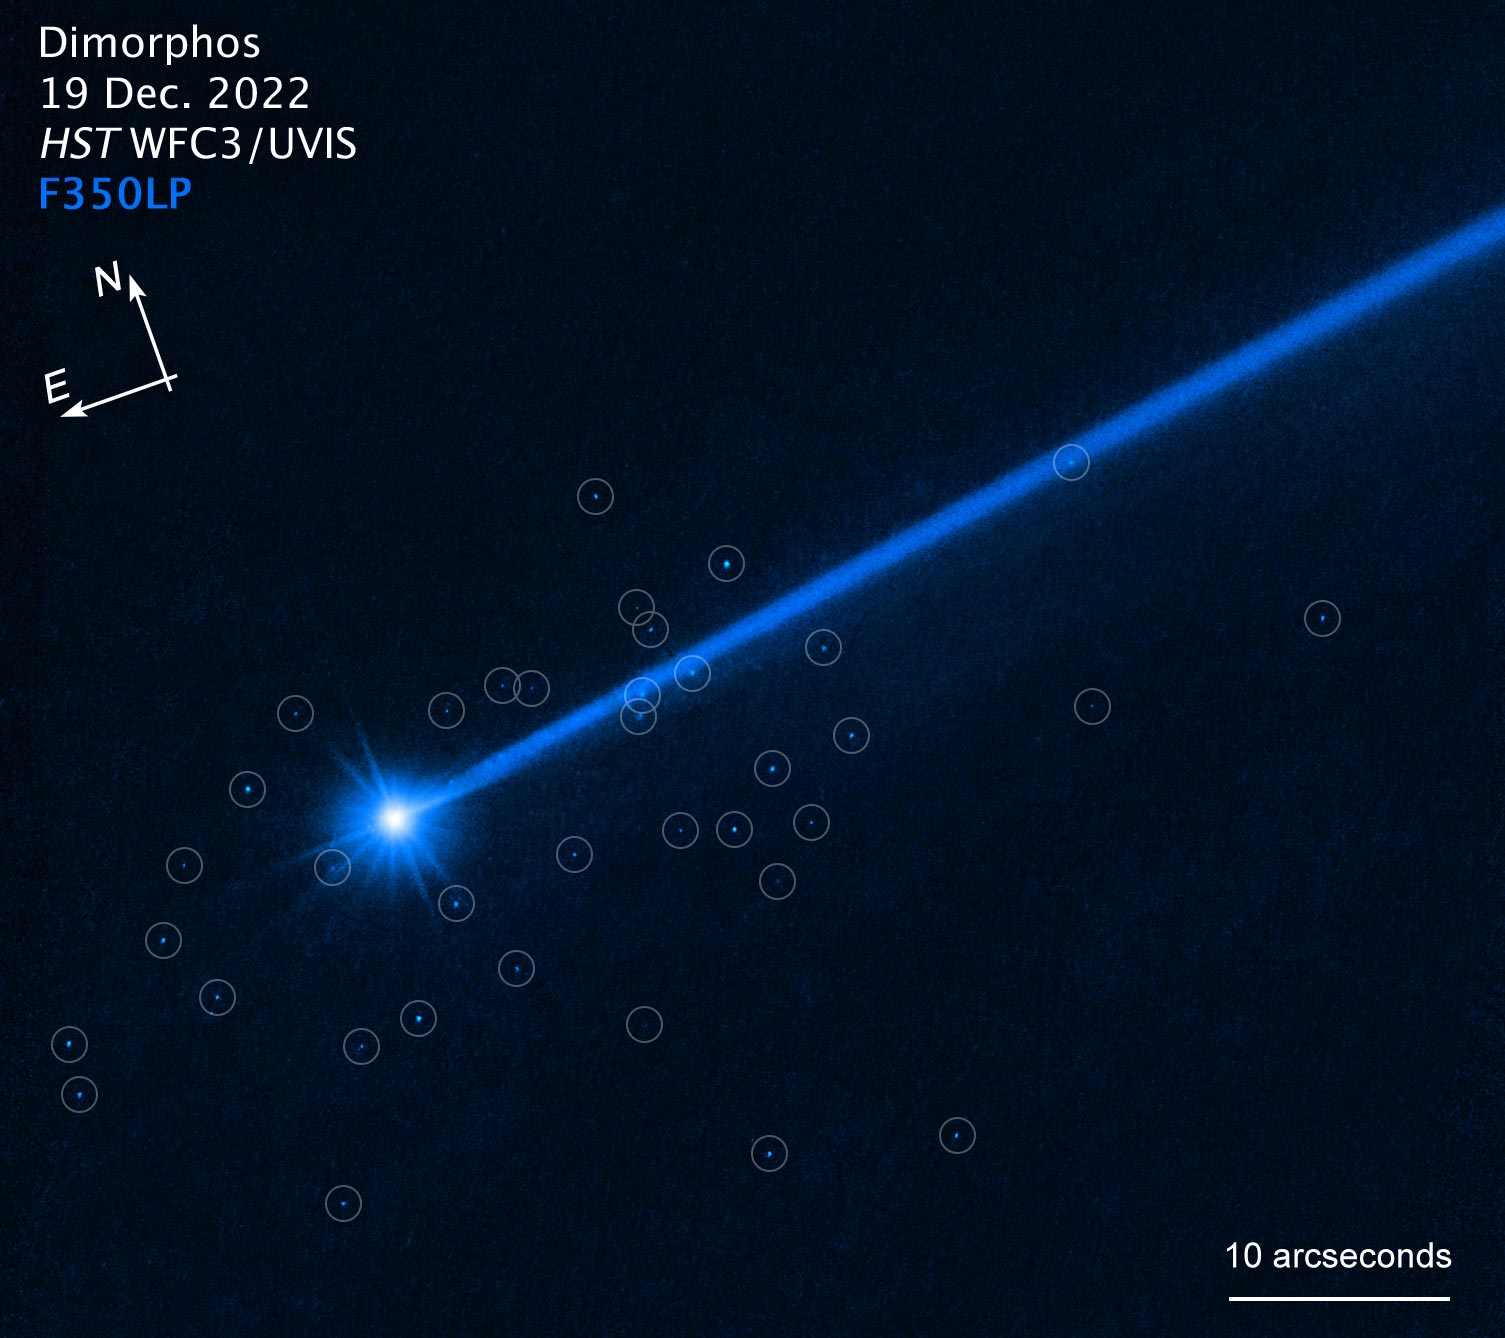 يصور تلسكوب هابل صخور ألقاها كويكب ديمورفوس